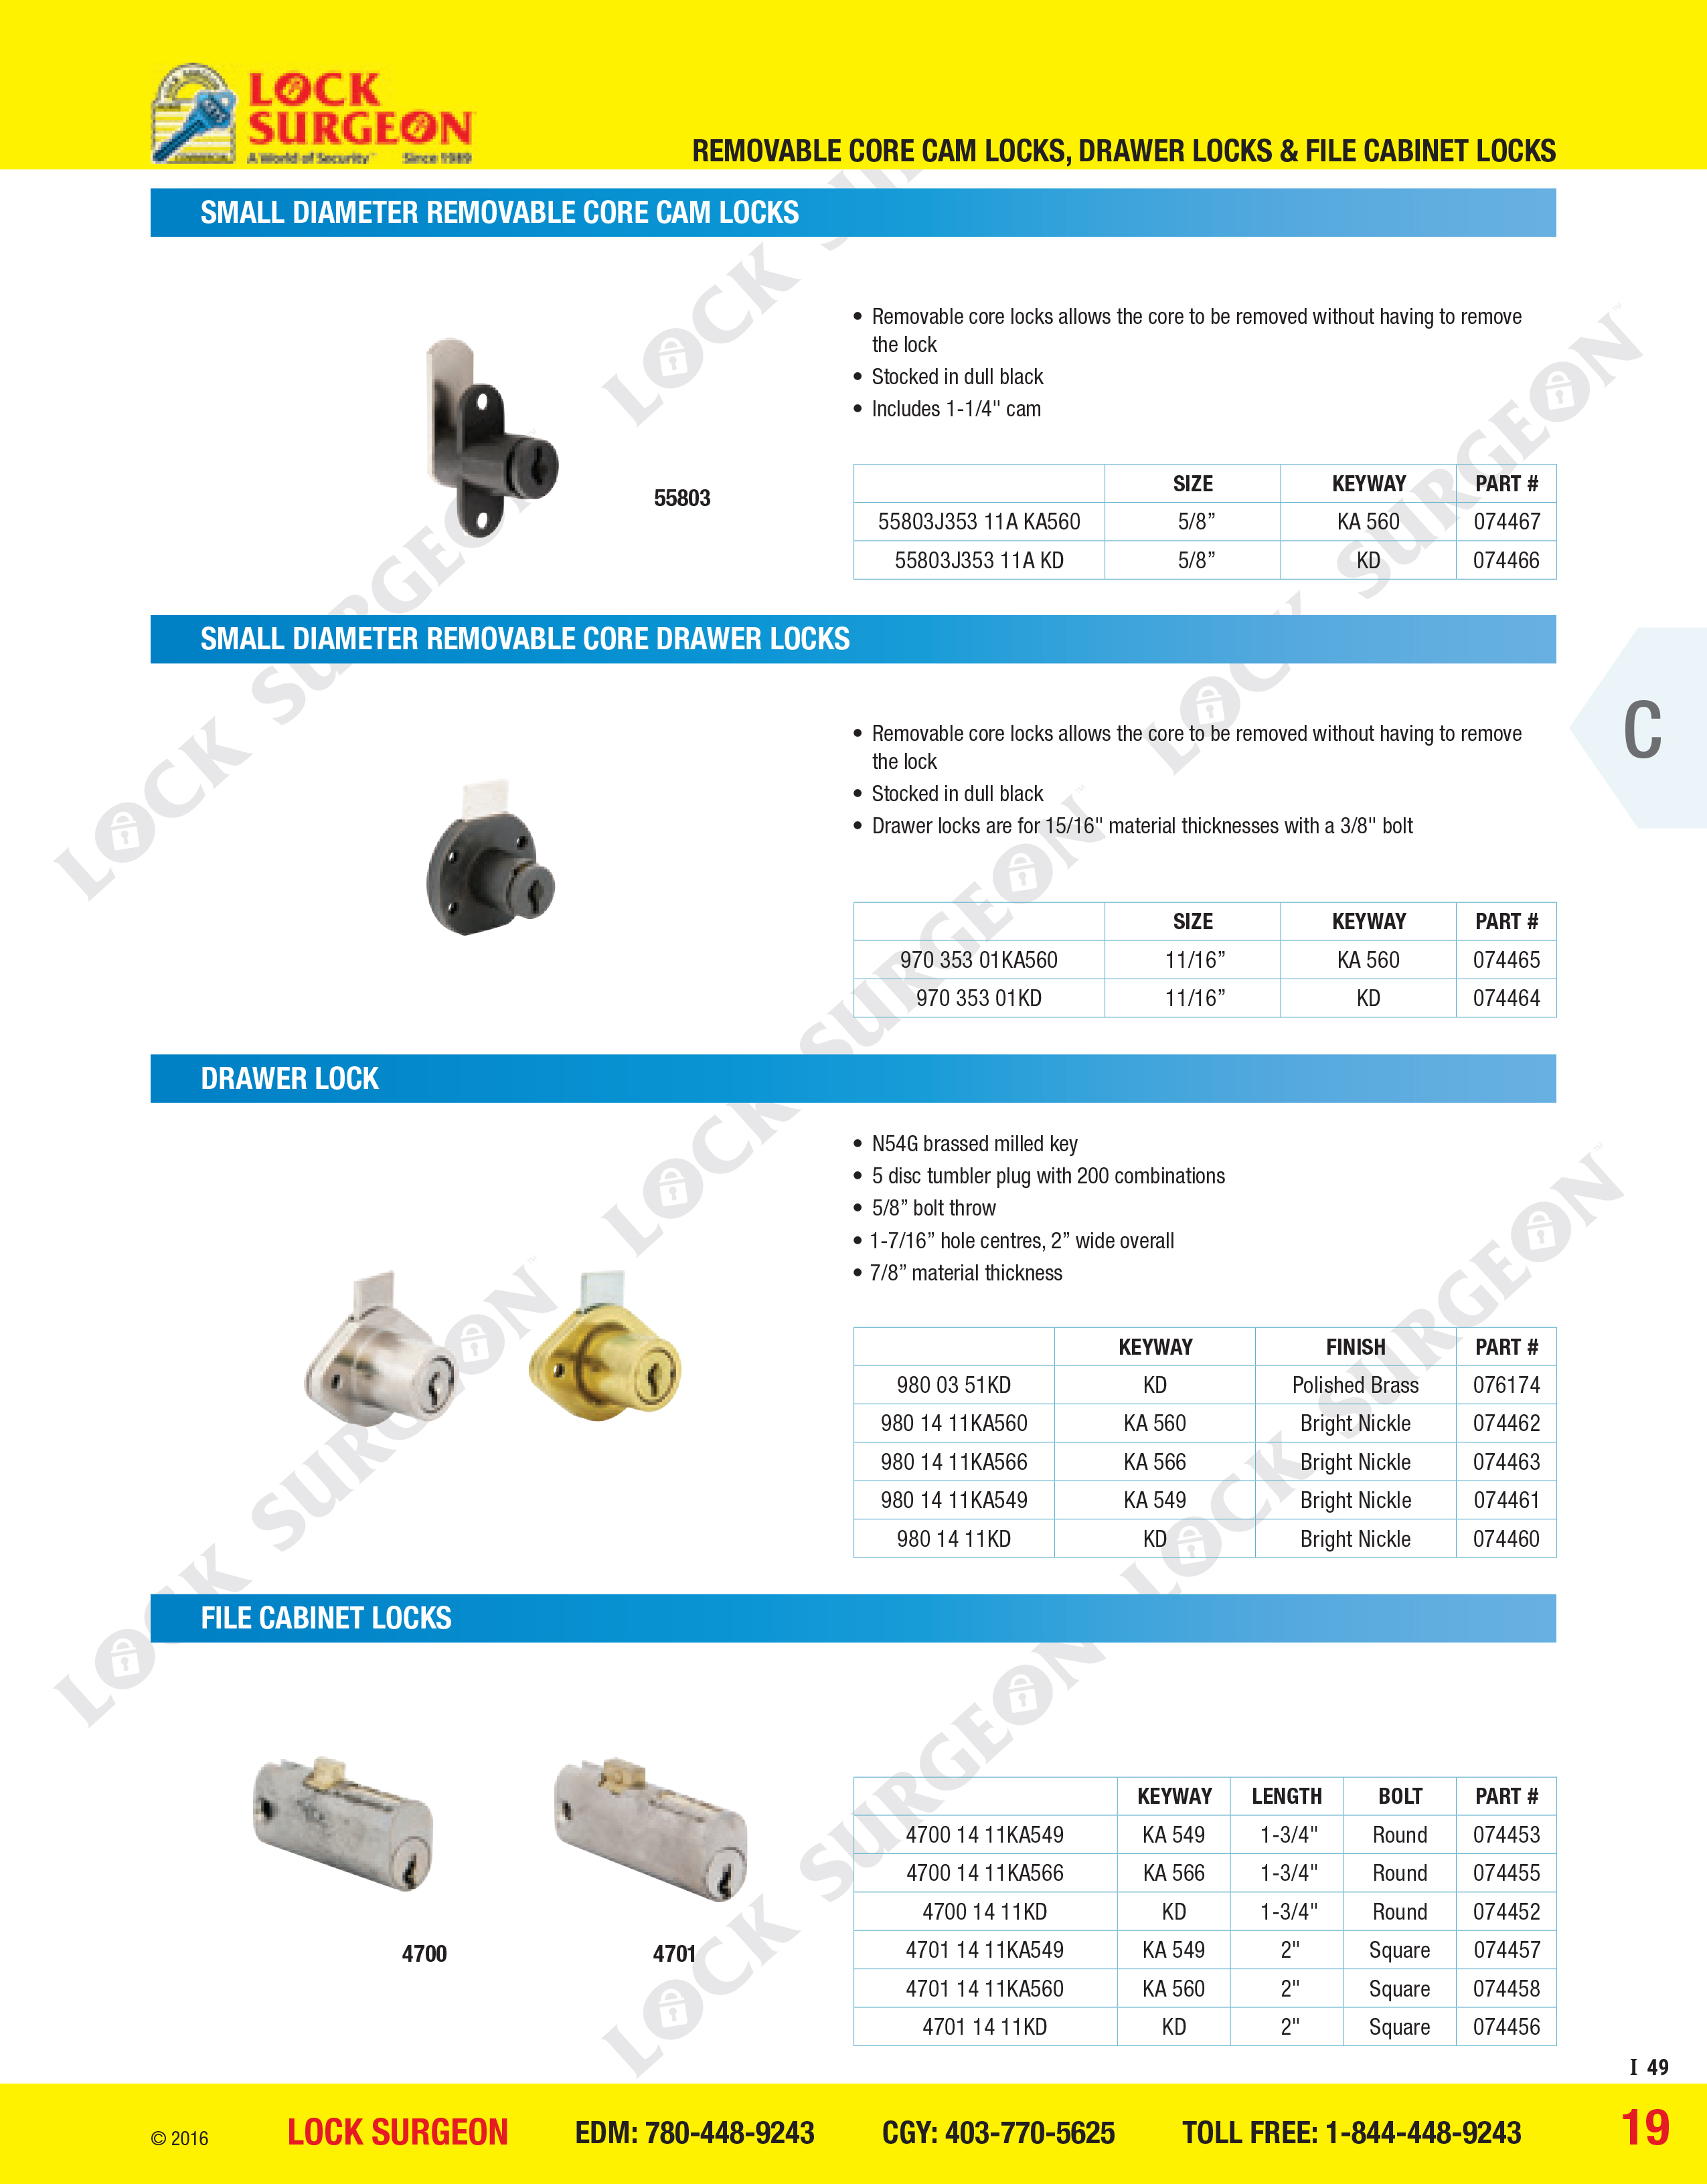 Small diameter removable core cam locks, small diameter removable core drawer locks.